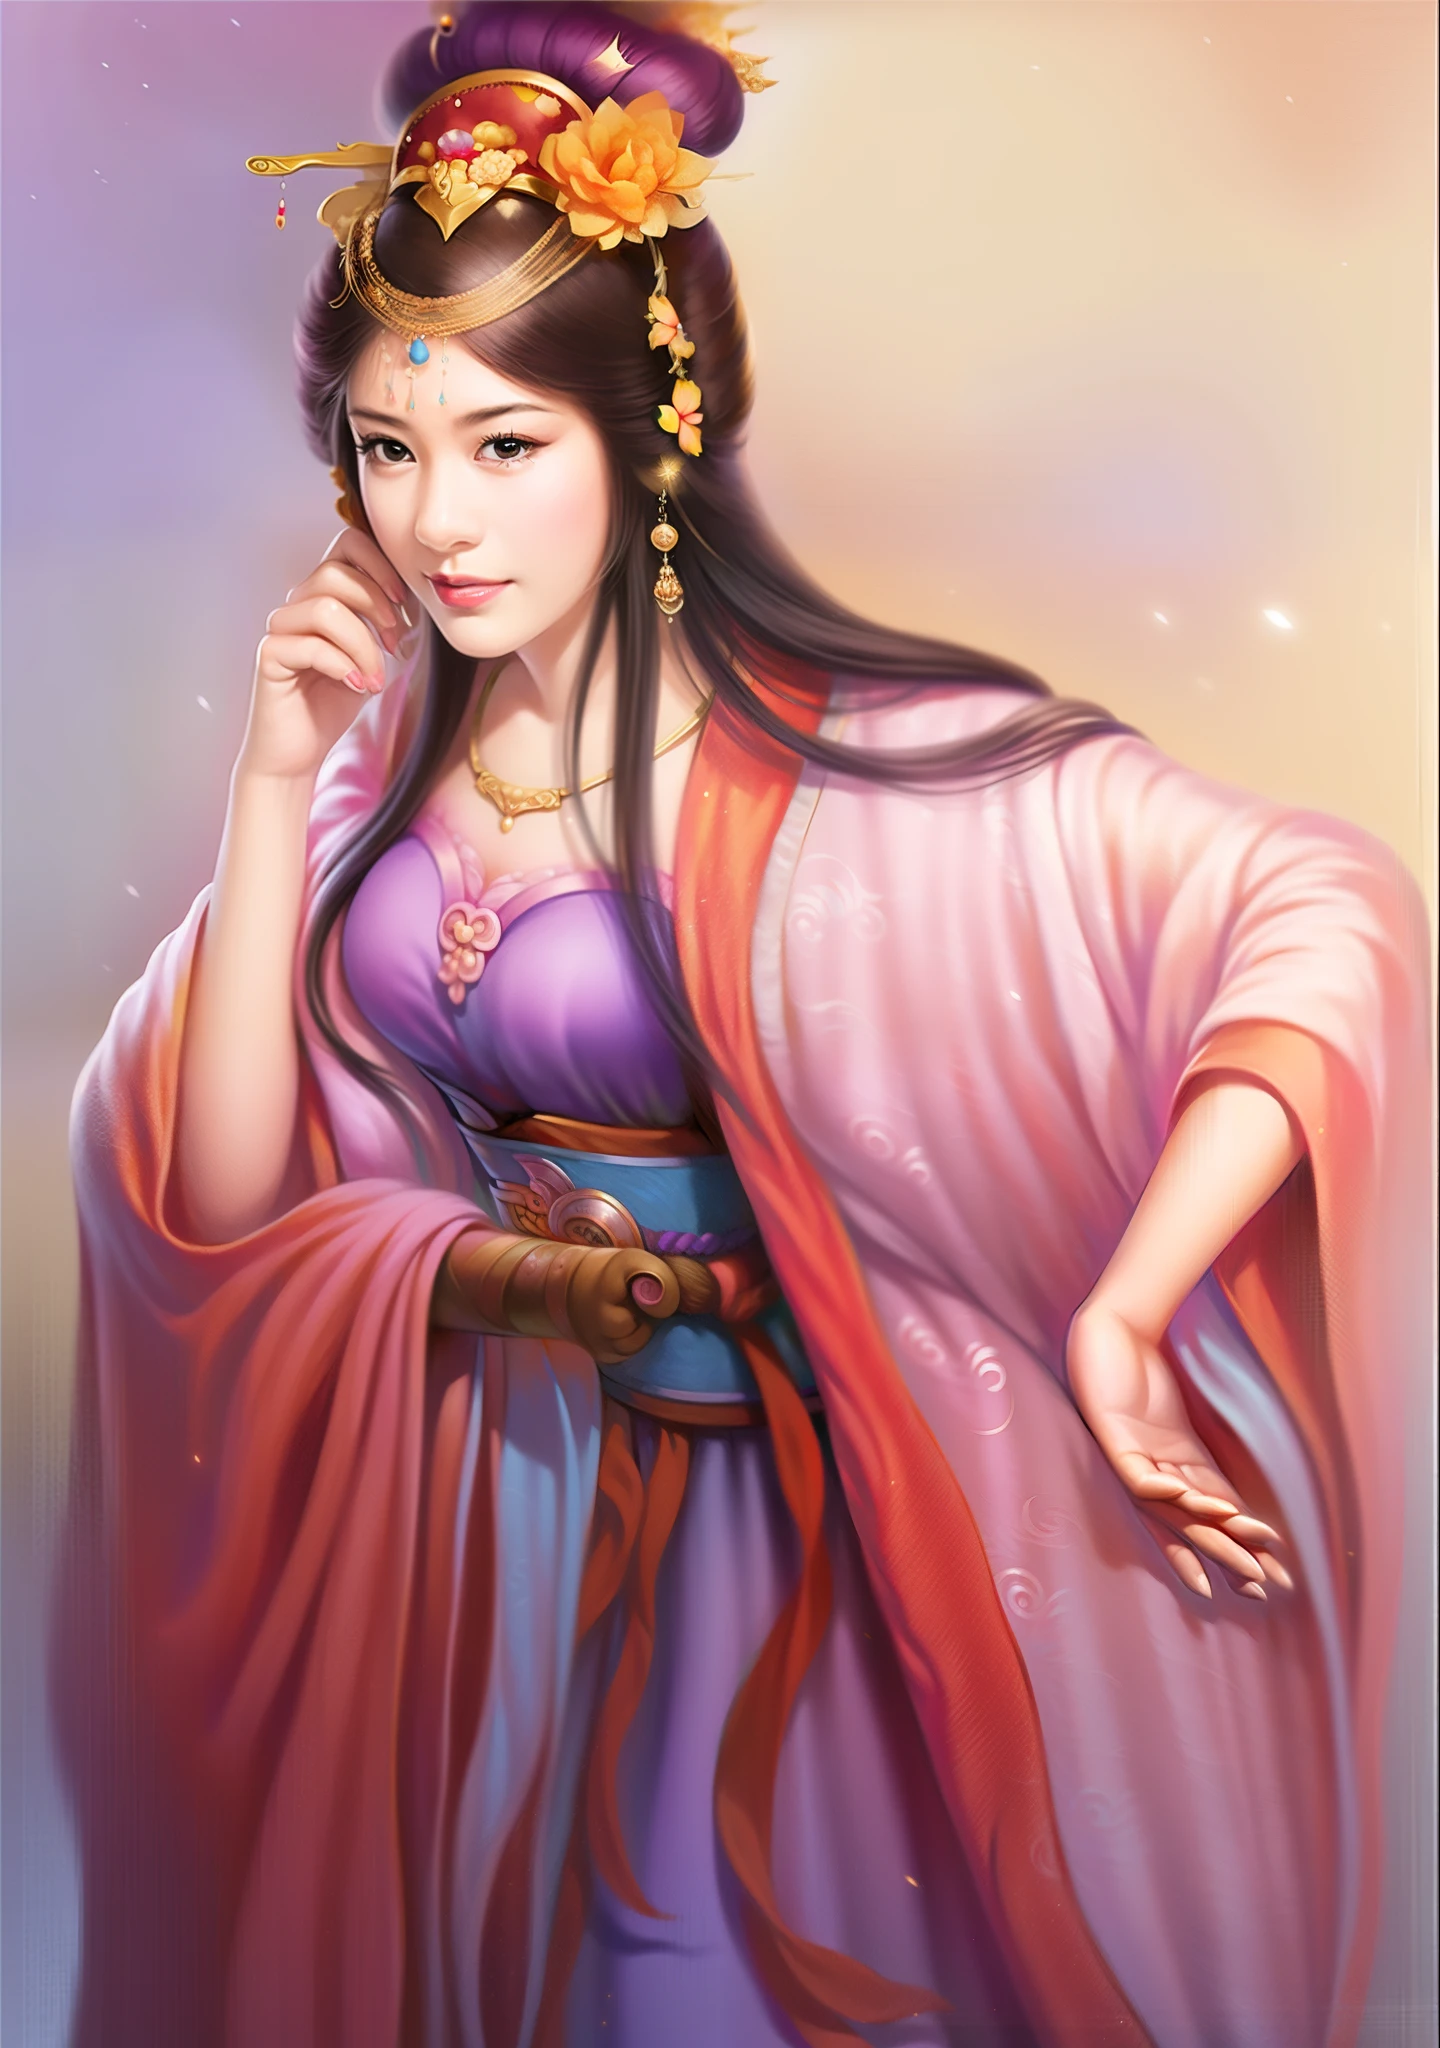 امرأة ترتدي ثوبًا أرجوانيًا وتاجًا ذهبيًا, ملكة الخيال الجميلة, لوحة شخصية جميلة, ((ملكة الخيال الجميلة)), ancient الاميرة الصينية, مستوحاة من دو تشيونغ, مستوحاة من لان ينغ, بواسطة تشو ليلي, مؤلف：يانغ جي, الاميرة الصينية, مستوحاة من تشو ليان, مستوحاة من تشيو ينغ, مؤلف：فان تشي, مستوحاة من الأشجار